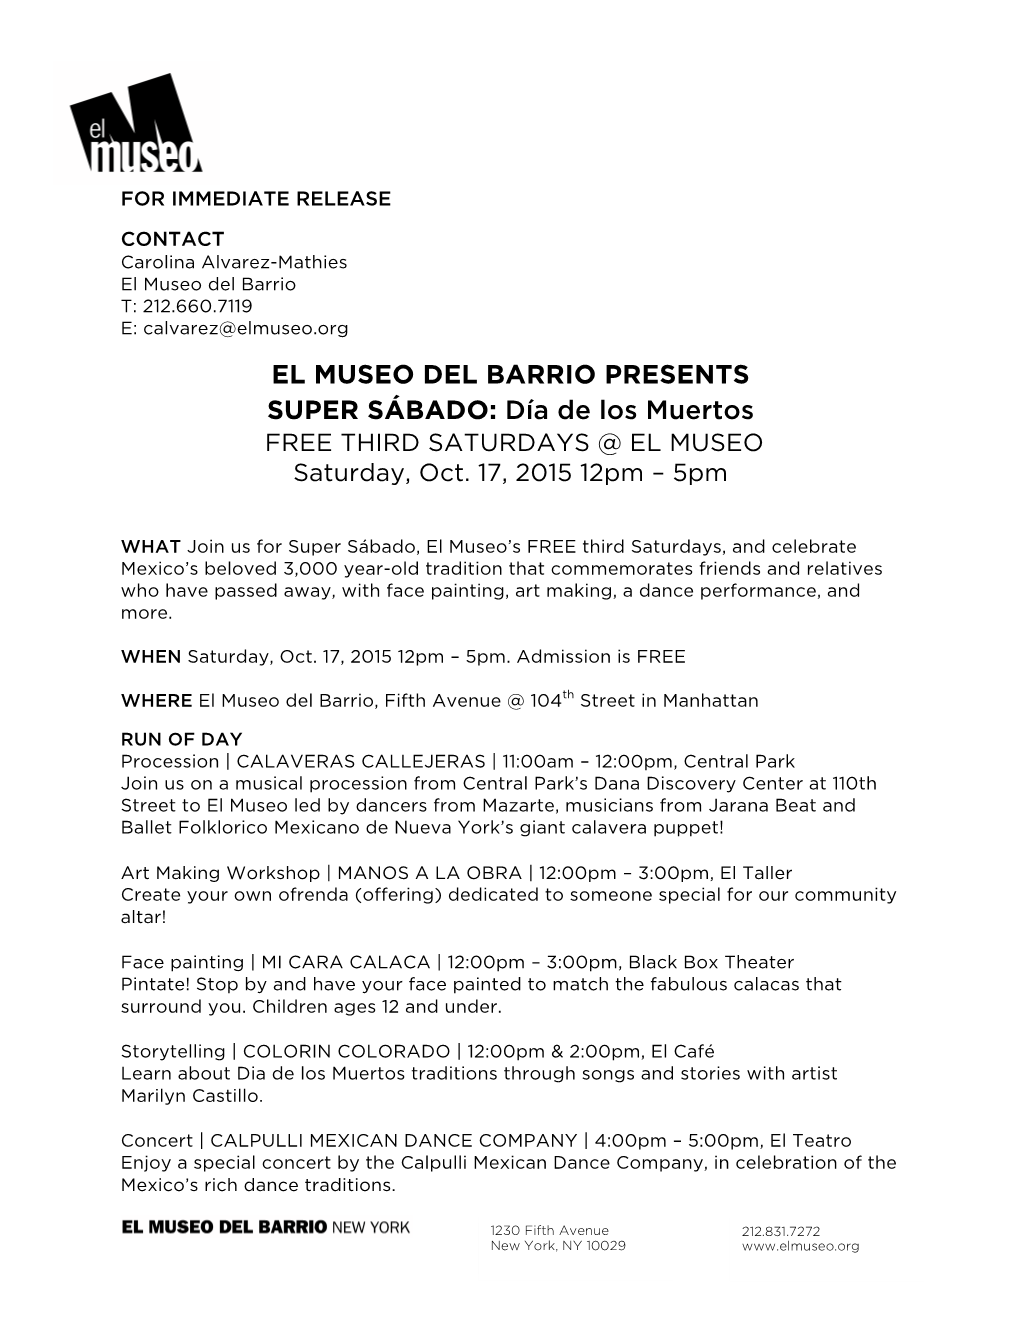 EL MUSEO DEL BARRIO PRESENTS SUPER SÁBADO: Día De Los Muertos FREE THIRD SATURDAYS @ EL MUSEO Saturday, Oct